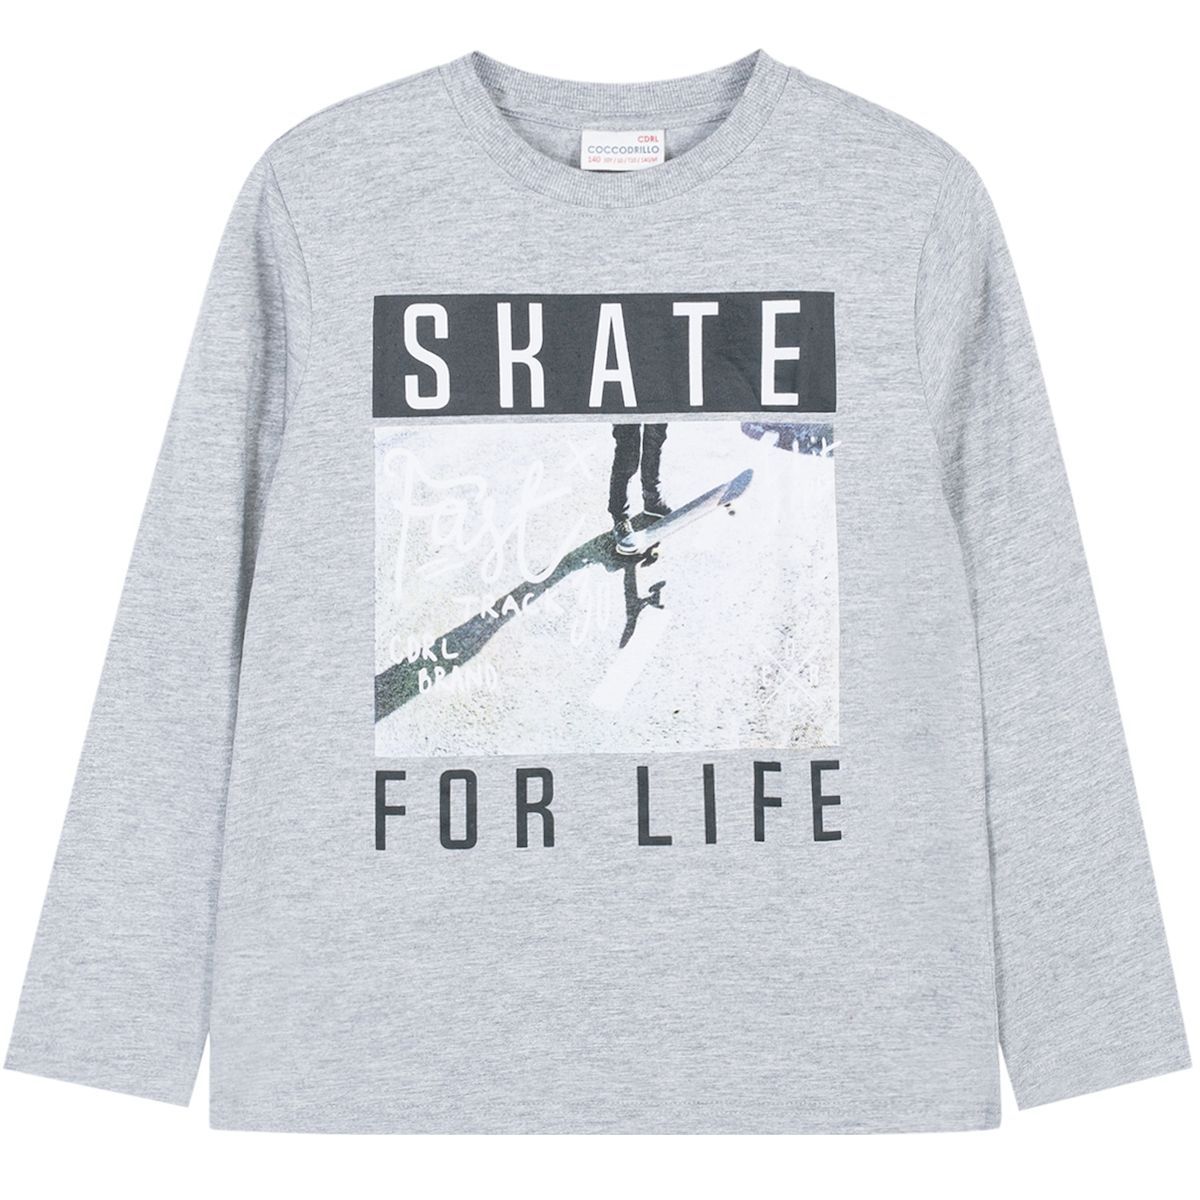    Coccodrillo Skate For Life, : . W191431M2SKA.  140